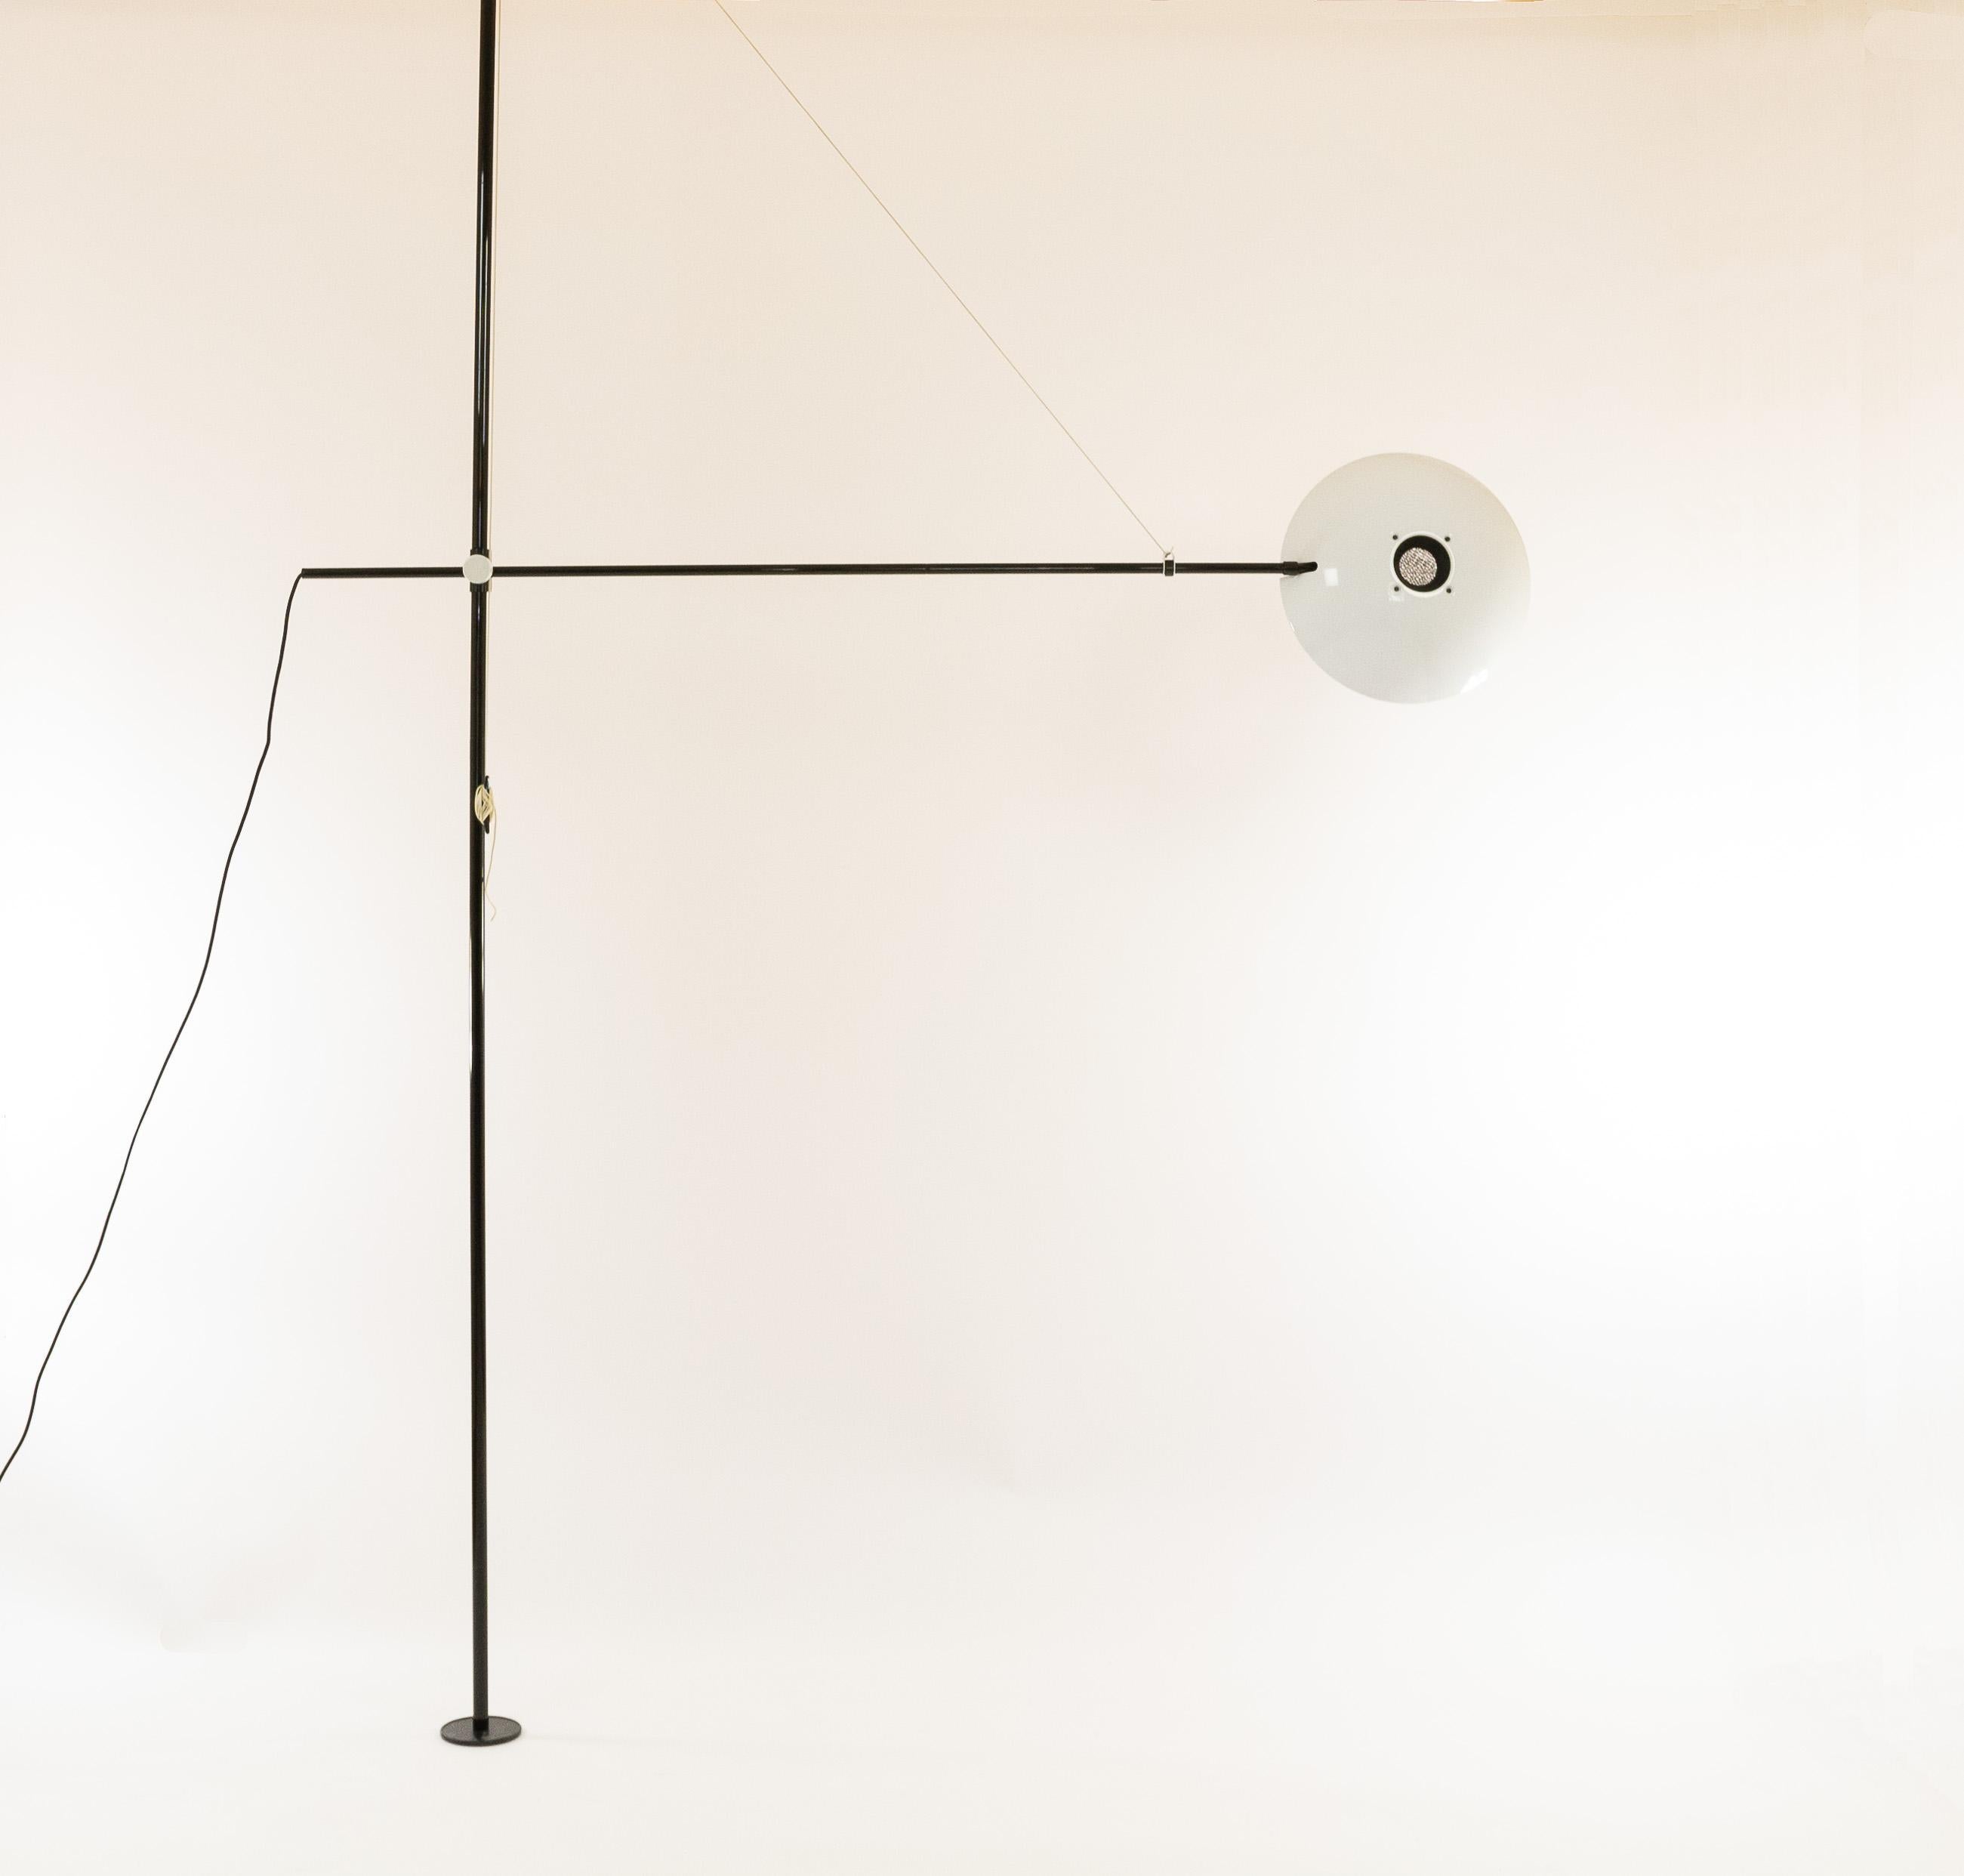 Lampe de sol à plafond Bigo entièrement réglable par S.T. Valenti pour le fabricant italien Valenti Luci, 1981

Bigo est un lampadaire halogène équipé d'un système de tubes télescopiques permettant de fixer la colonne entre le plafond et le sol.